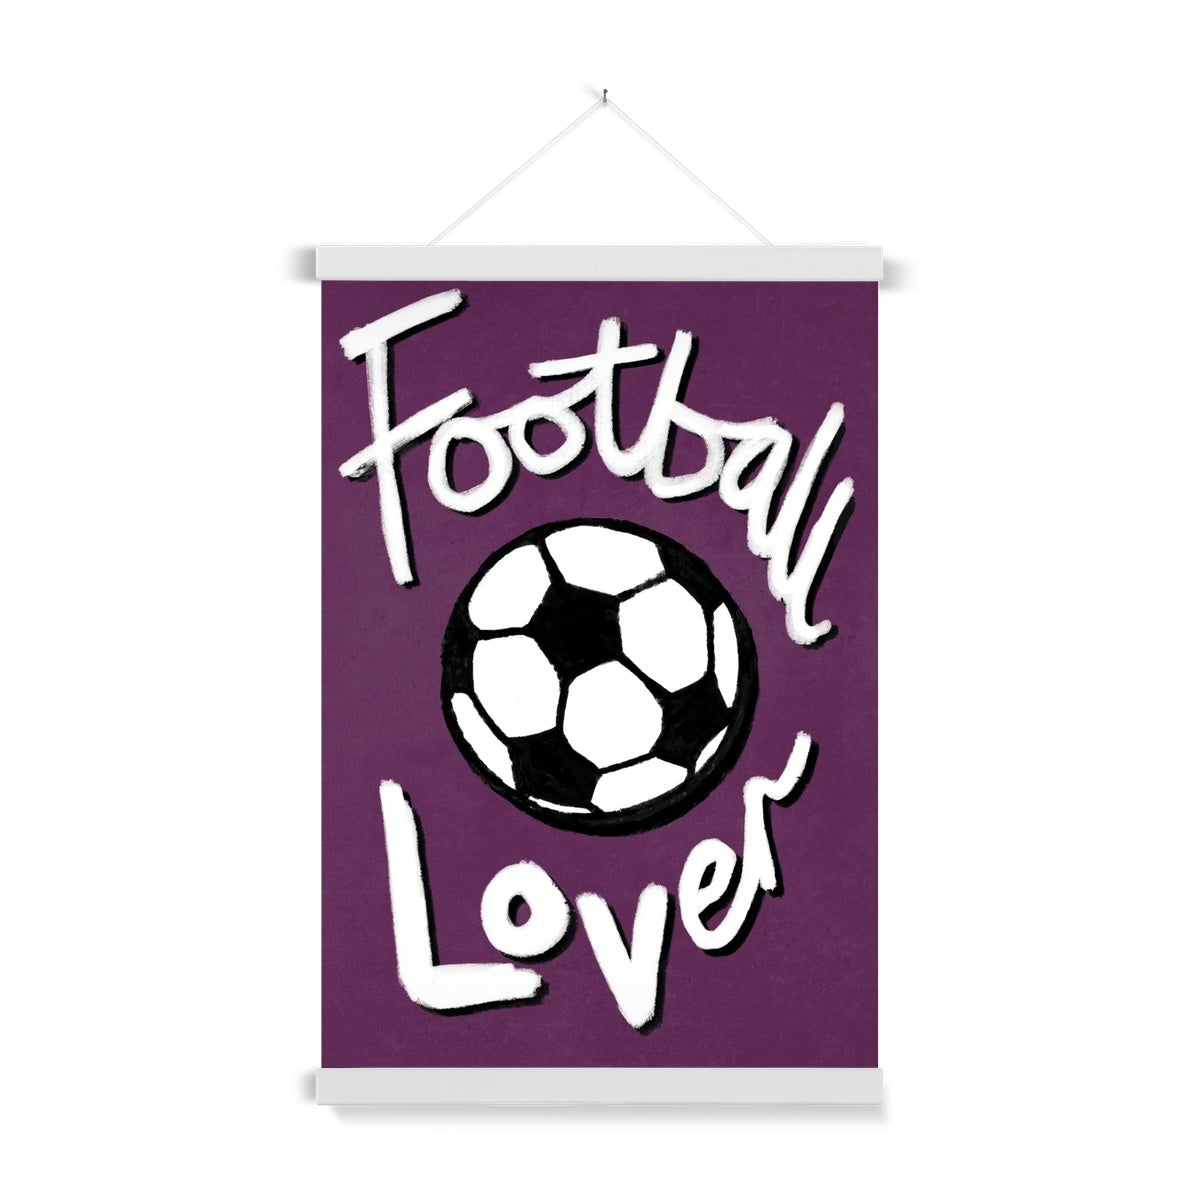 Football Lover Print - Plum, Black, White Fine Art Print with Hanger